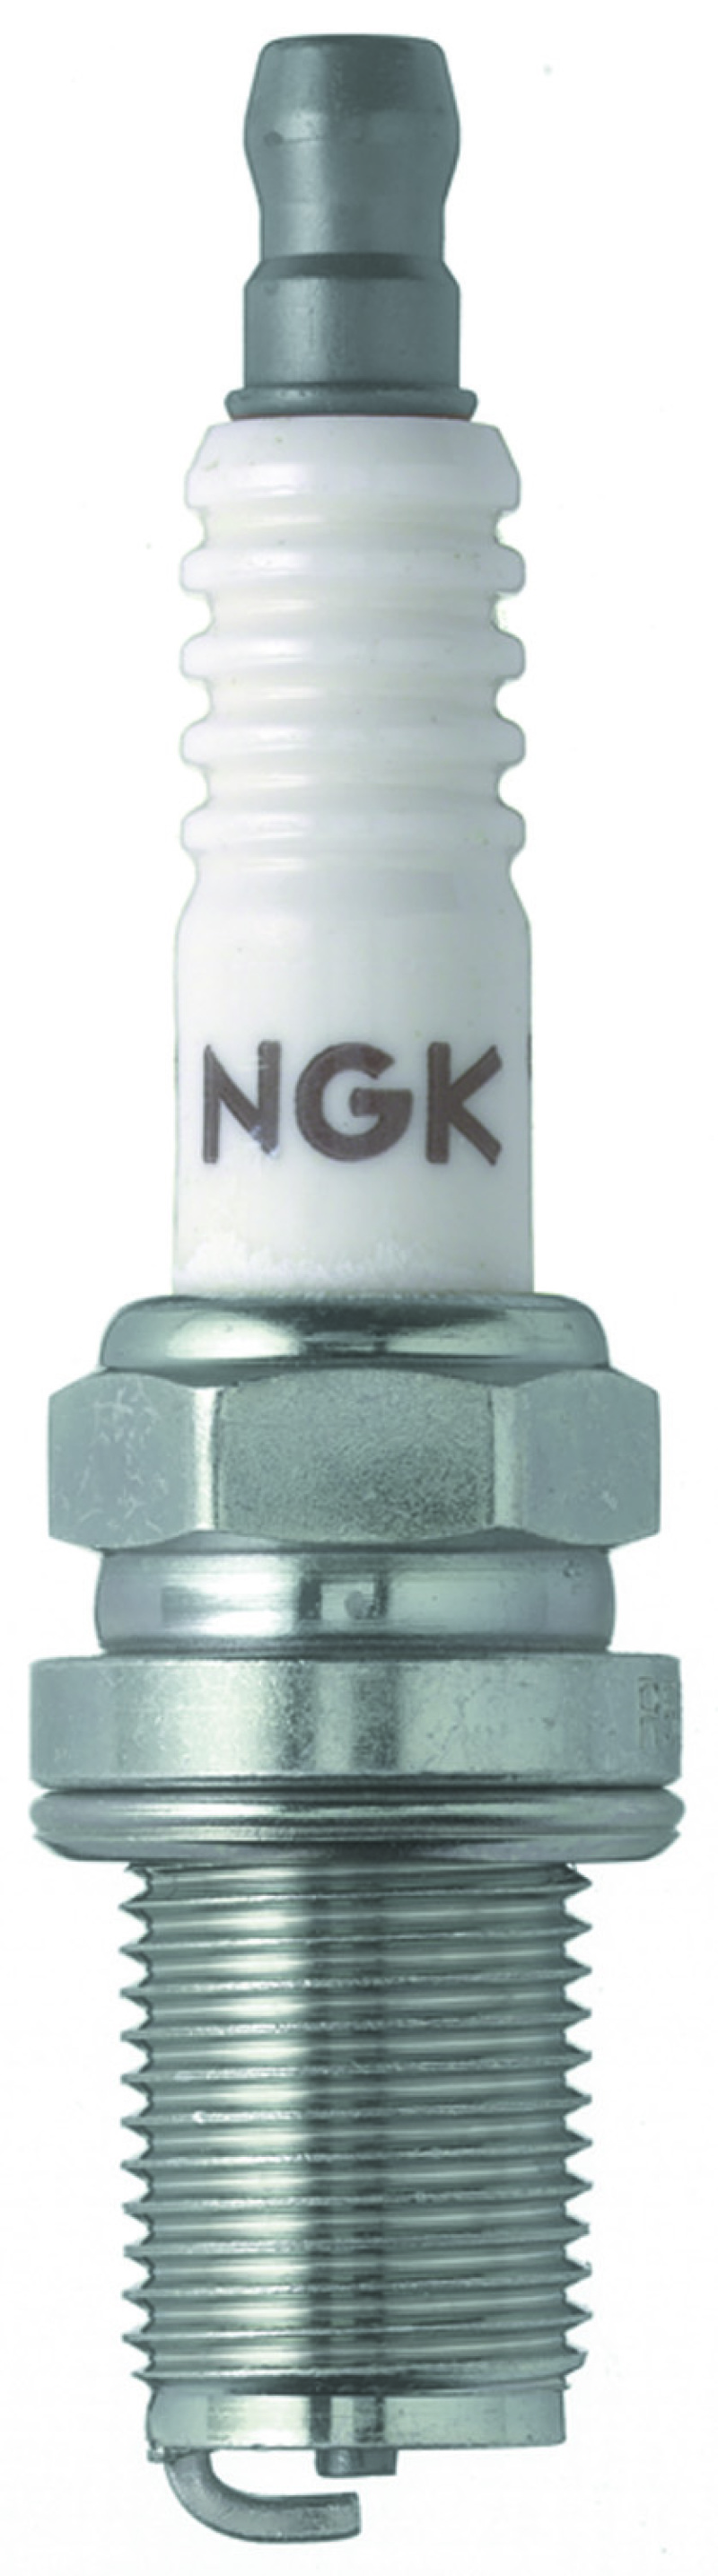 NGK Racing Spark Plug Box of 4 (R5671A-8) - 4554